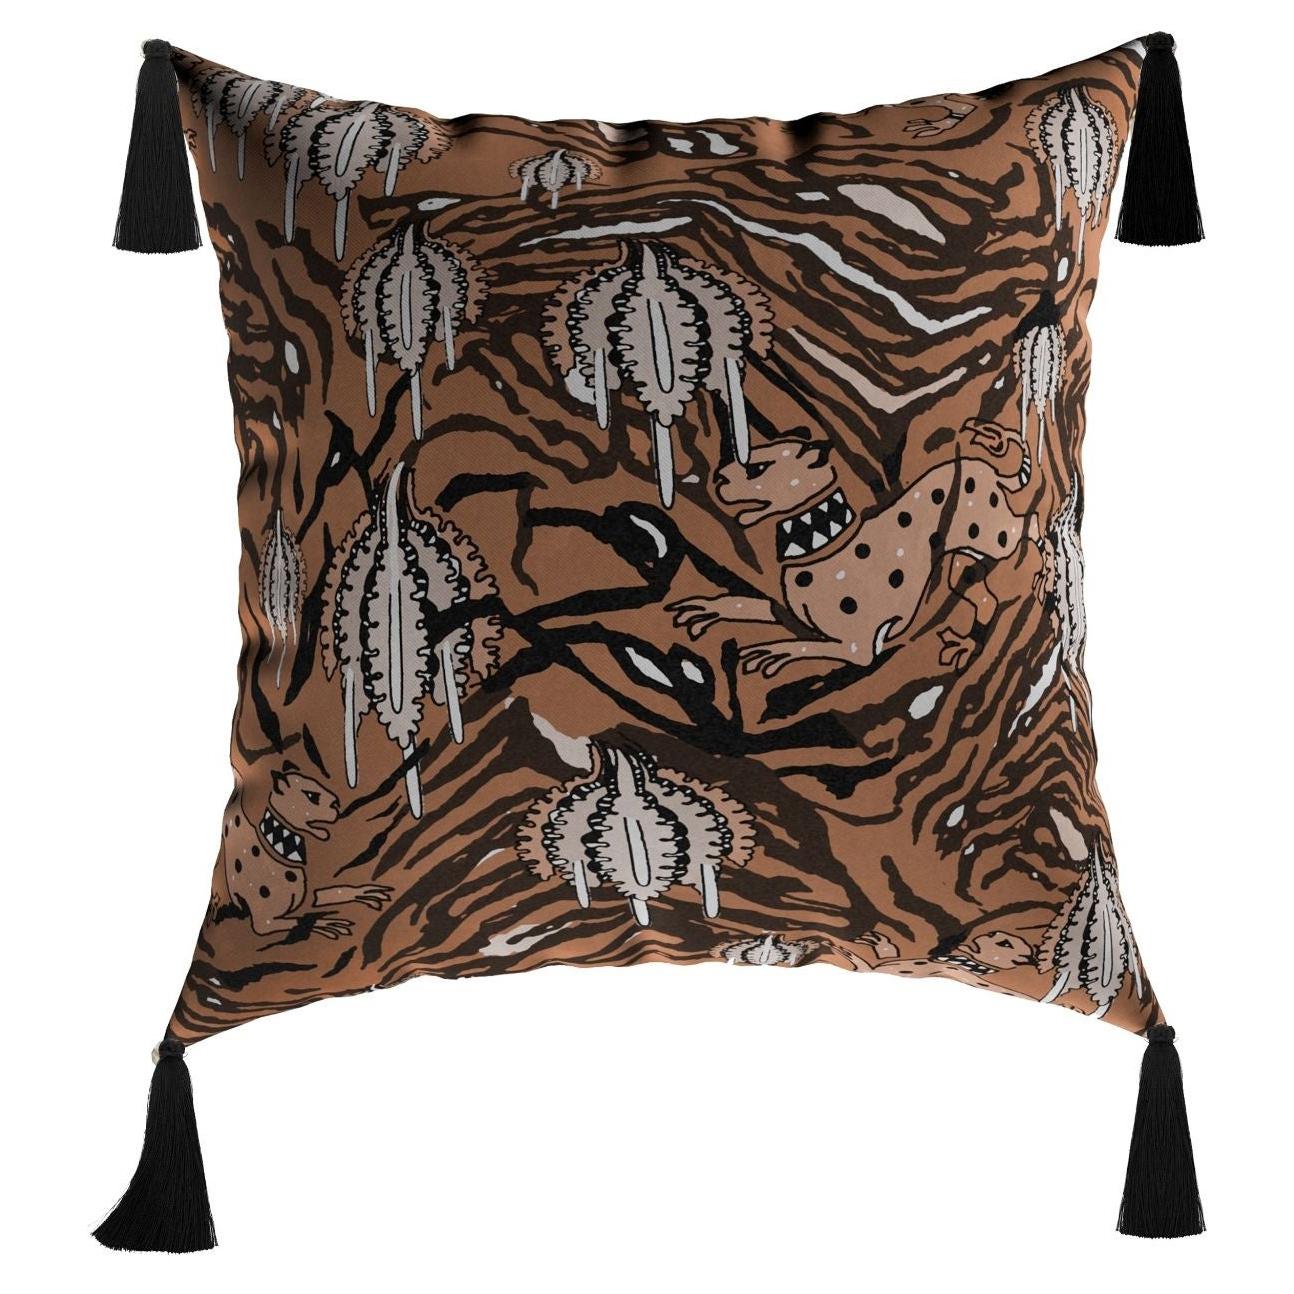 Modern Orange Cushion, Artistic Tiger Pattern Velvet Pillow Black Fringes Tassel